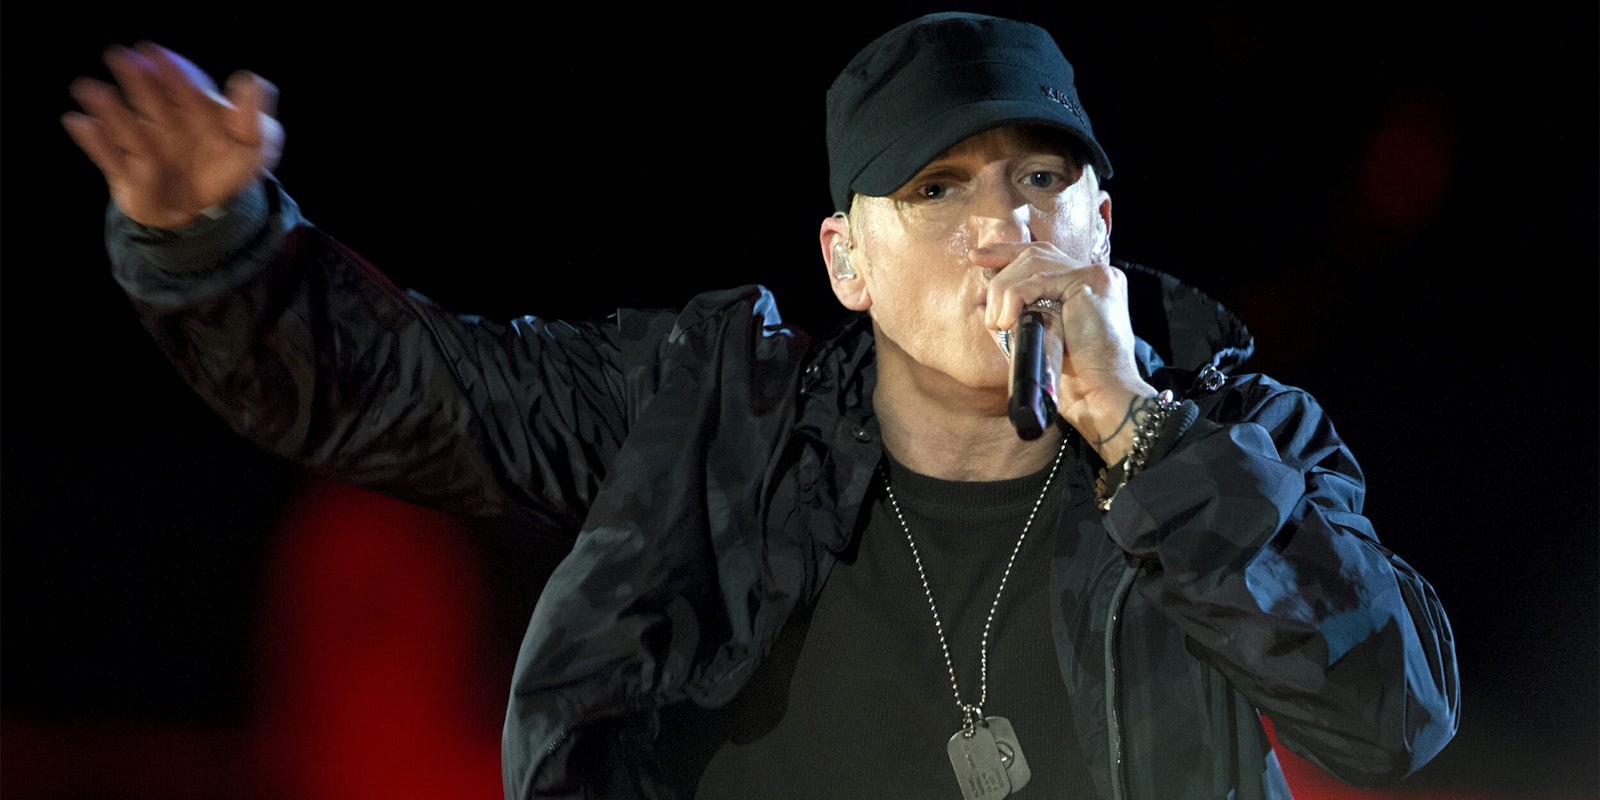 Eminem performs during The Concert for Valor in Washington, D.C. Nov. 11, 2014